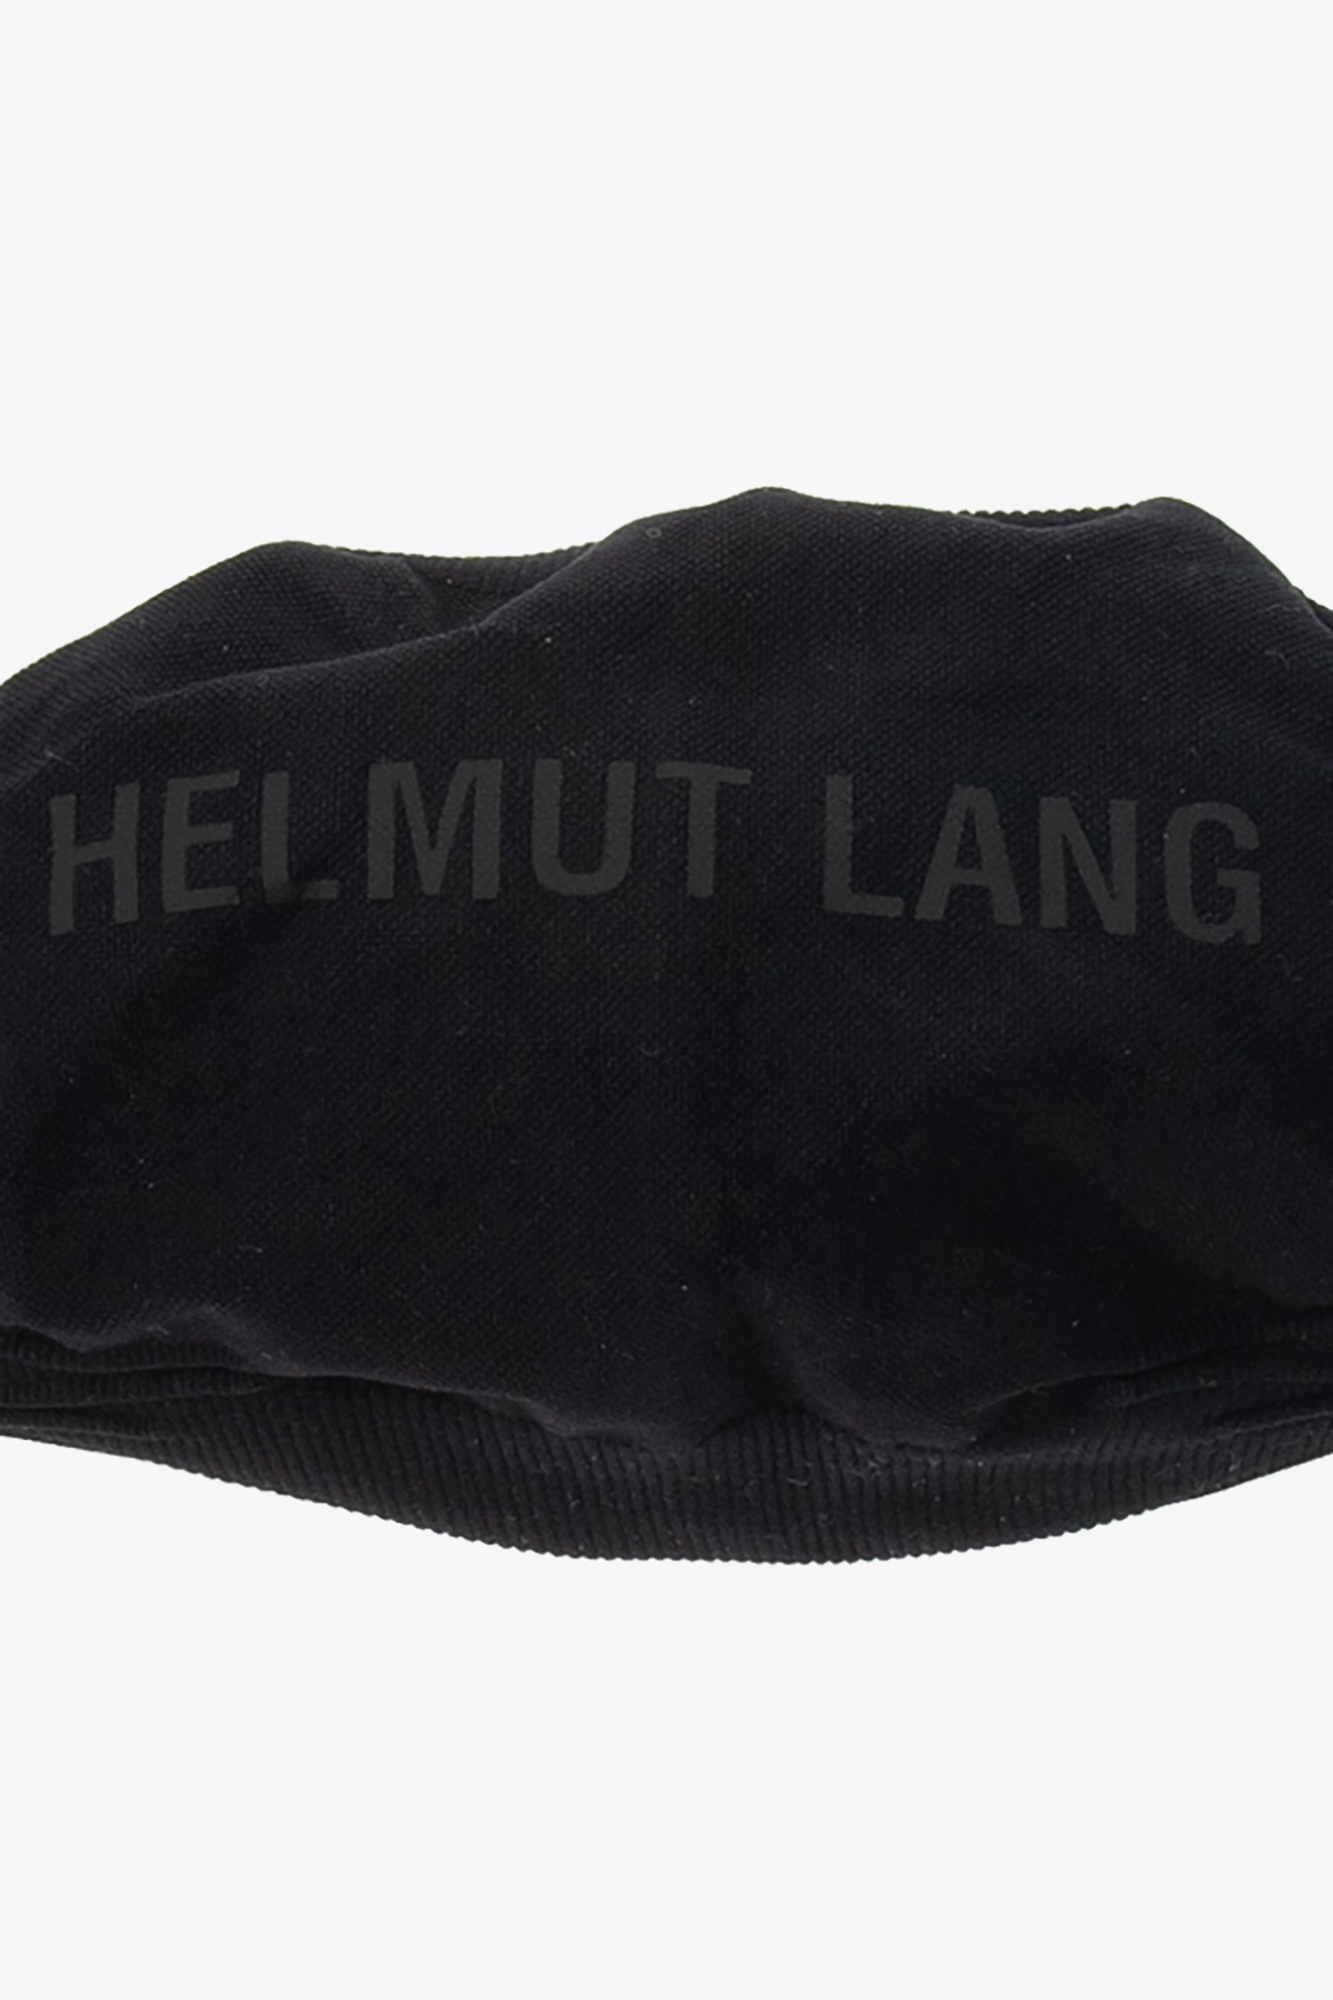 Helmut Lang warped logo lanyard face mask